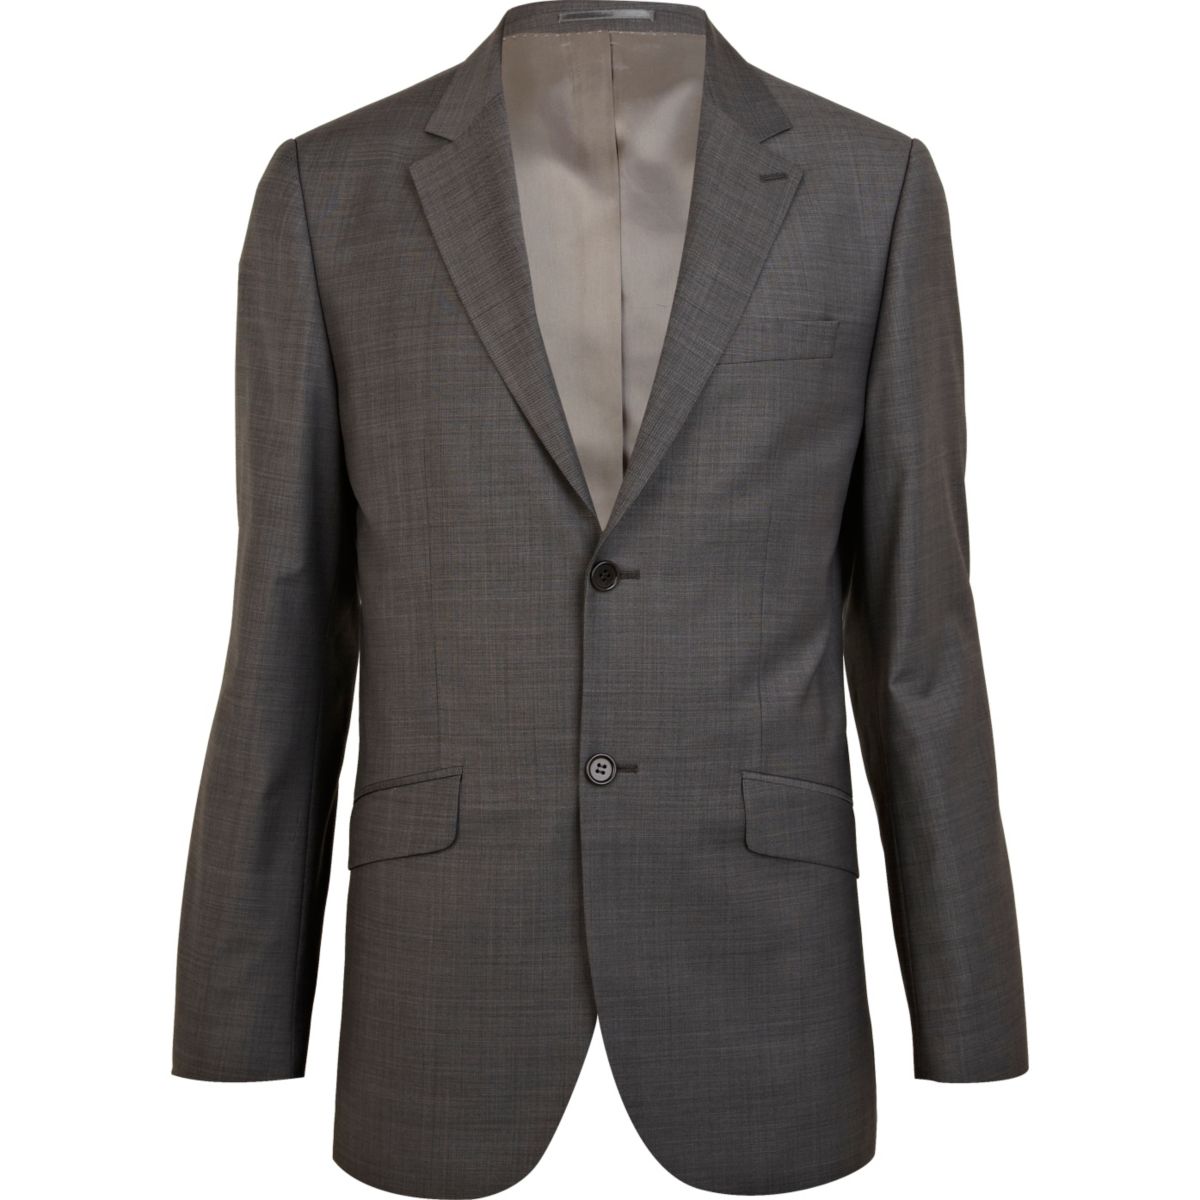 Grey classic fit smart suit jacket - Suits - Sale - men